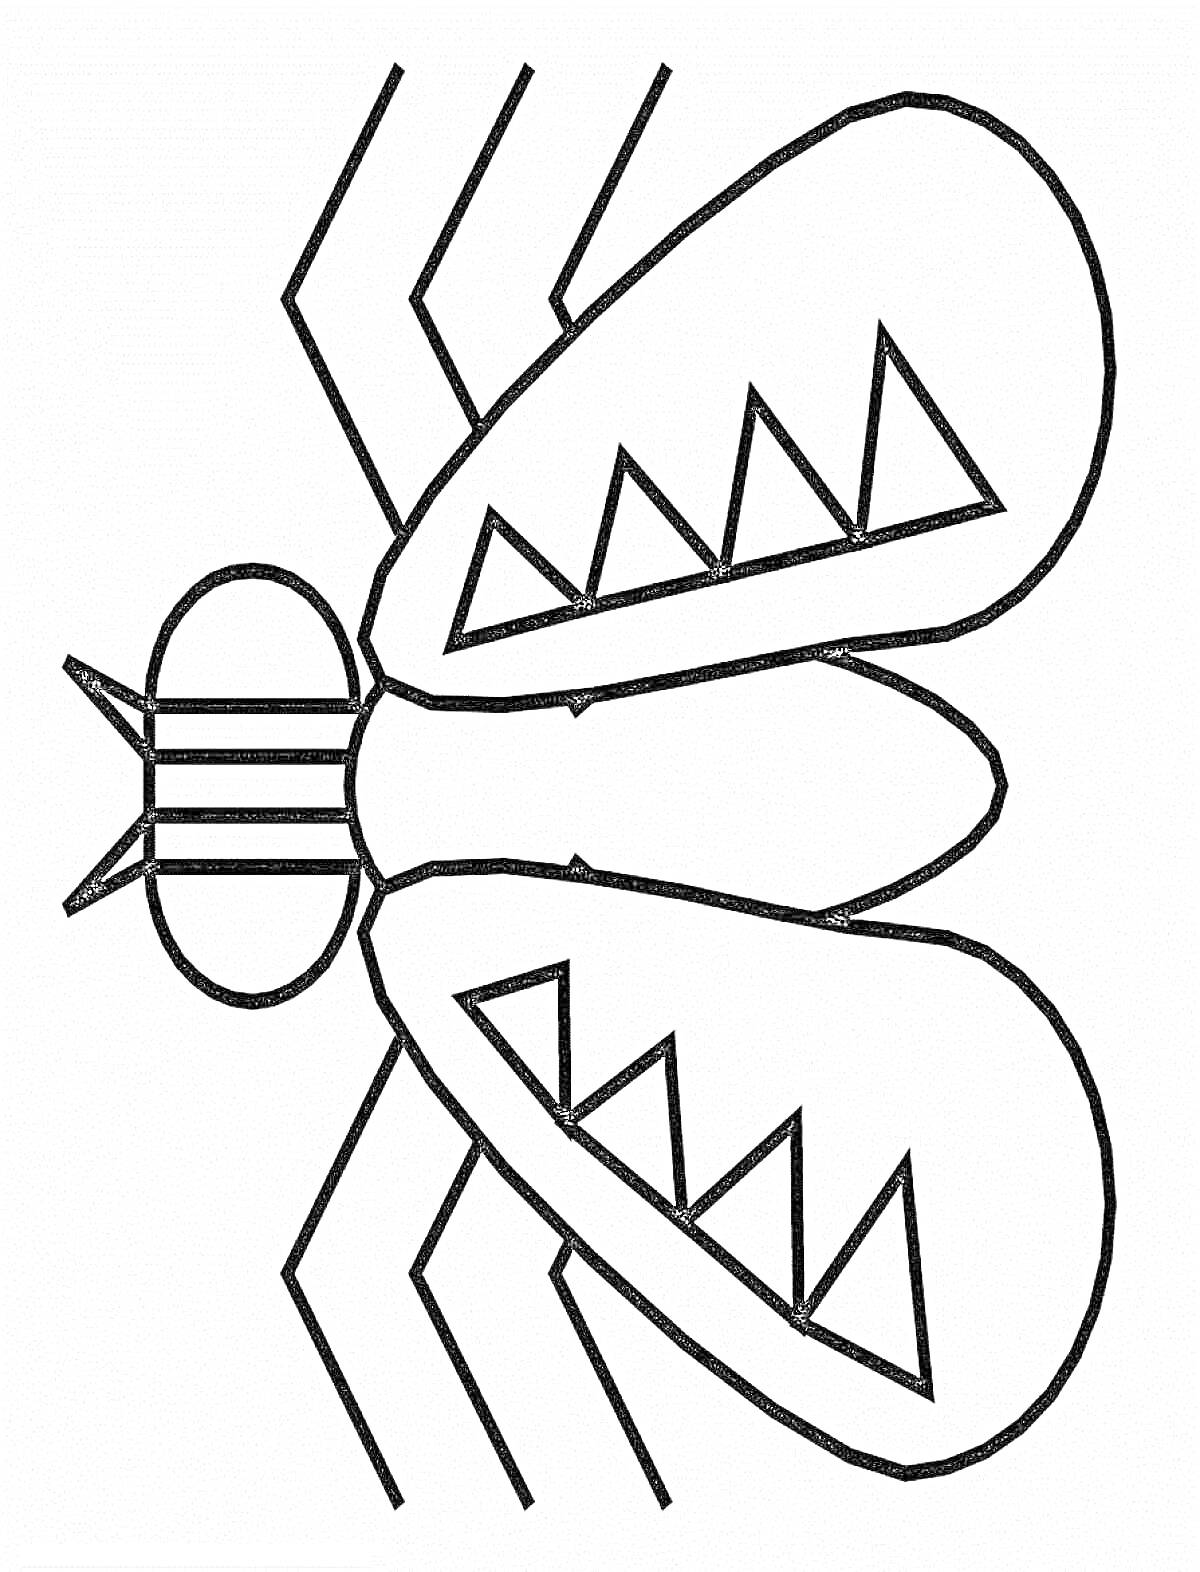 Раскраска Муха с полосатым туловищем и крыльями с треугольными узорами